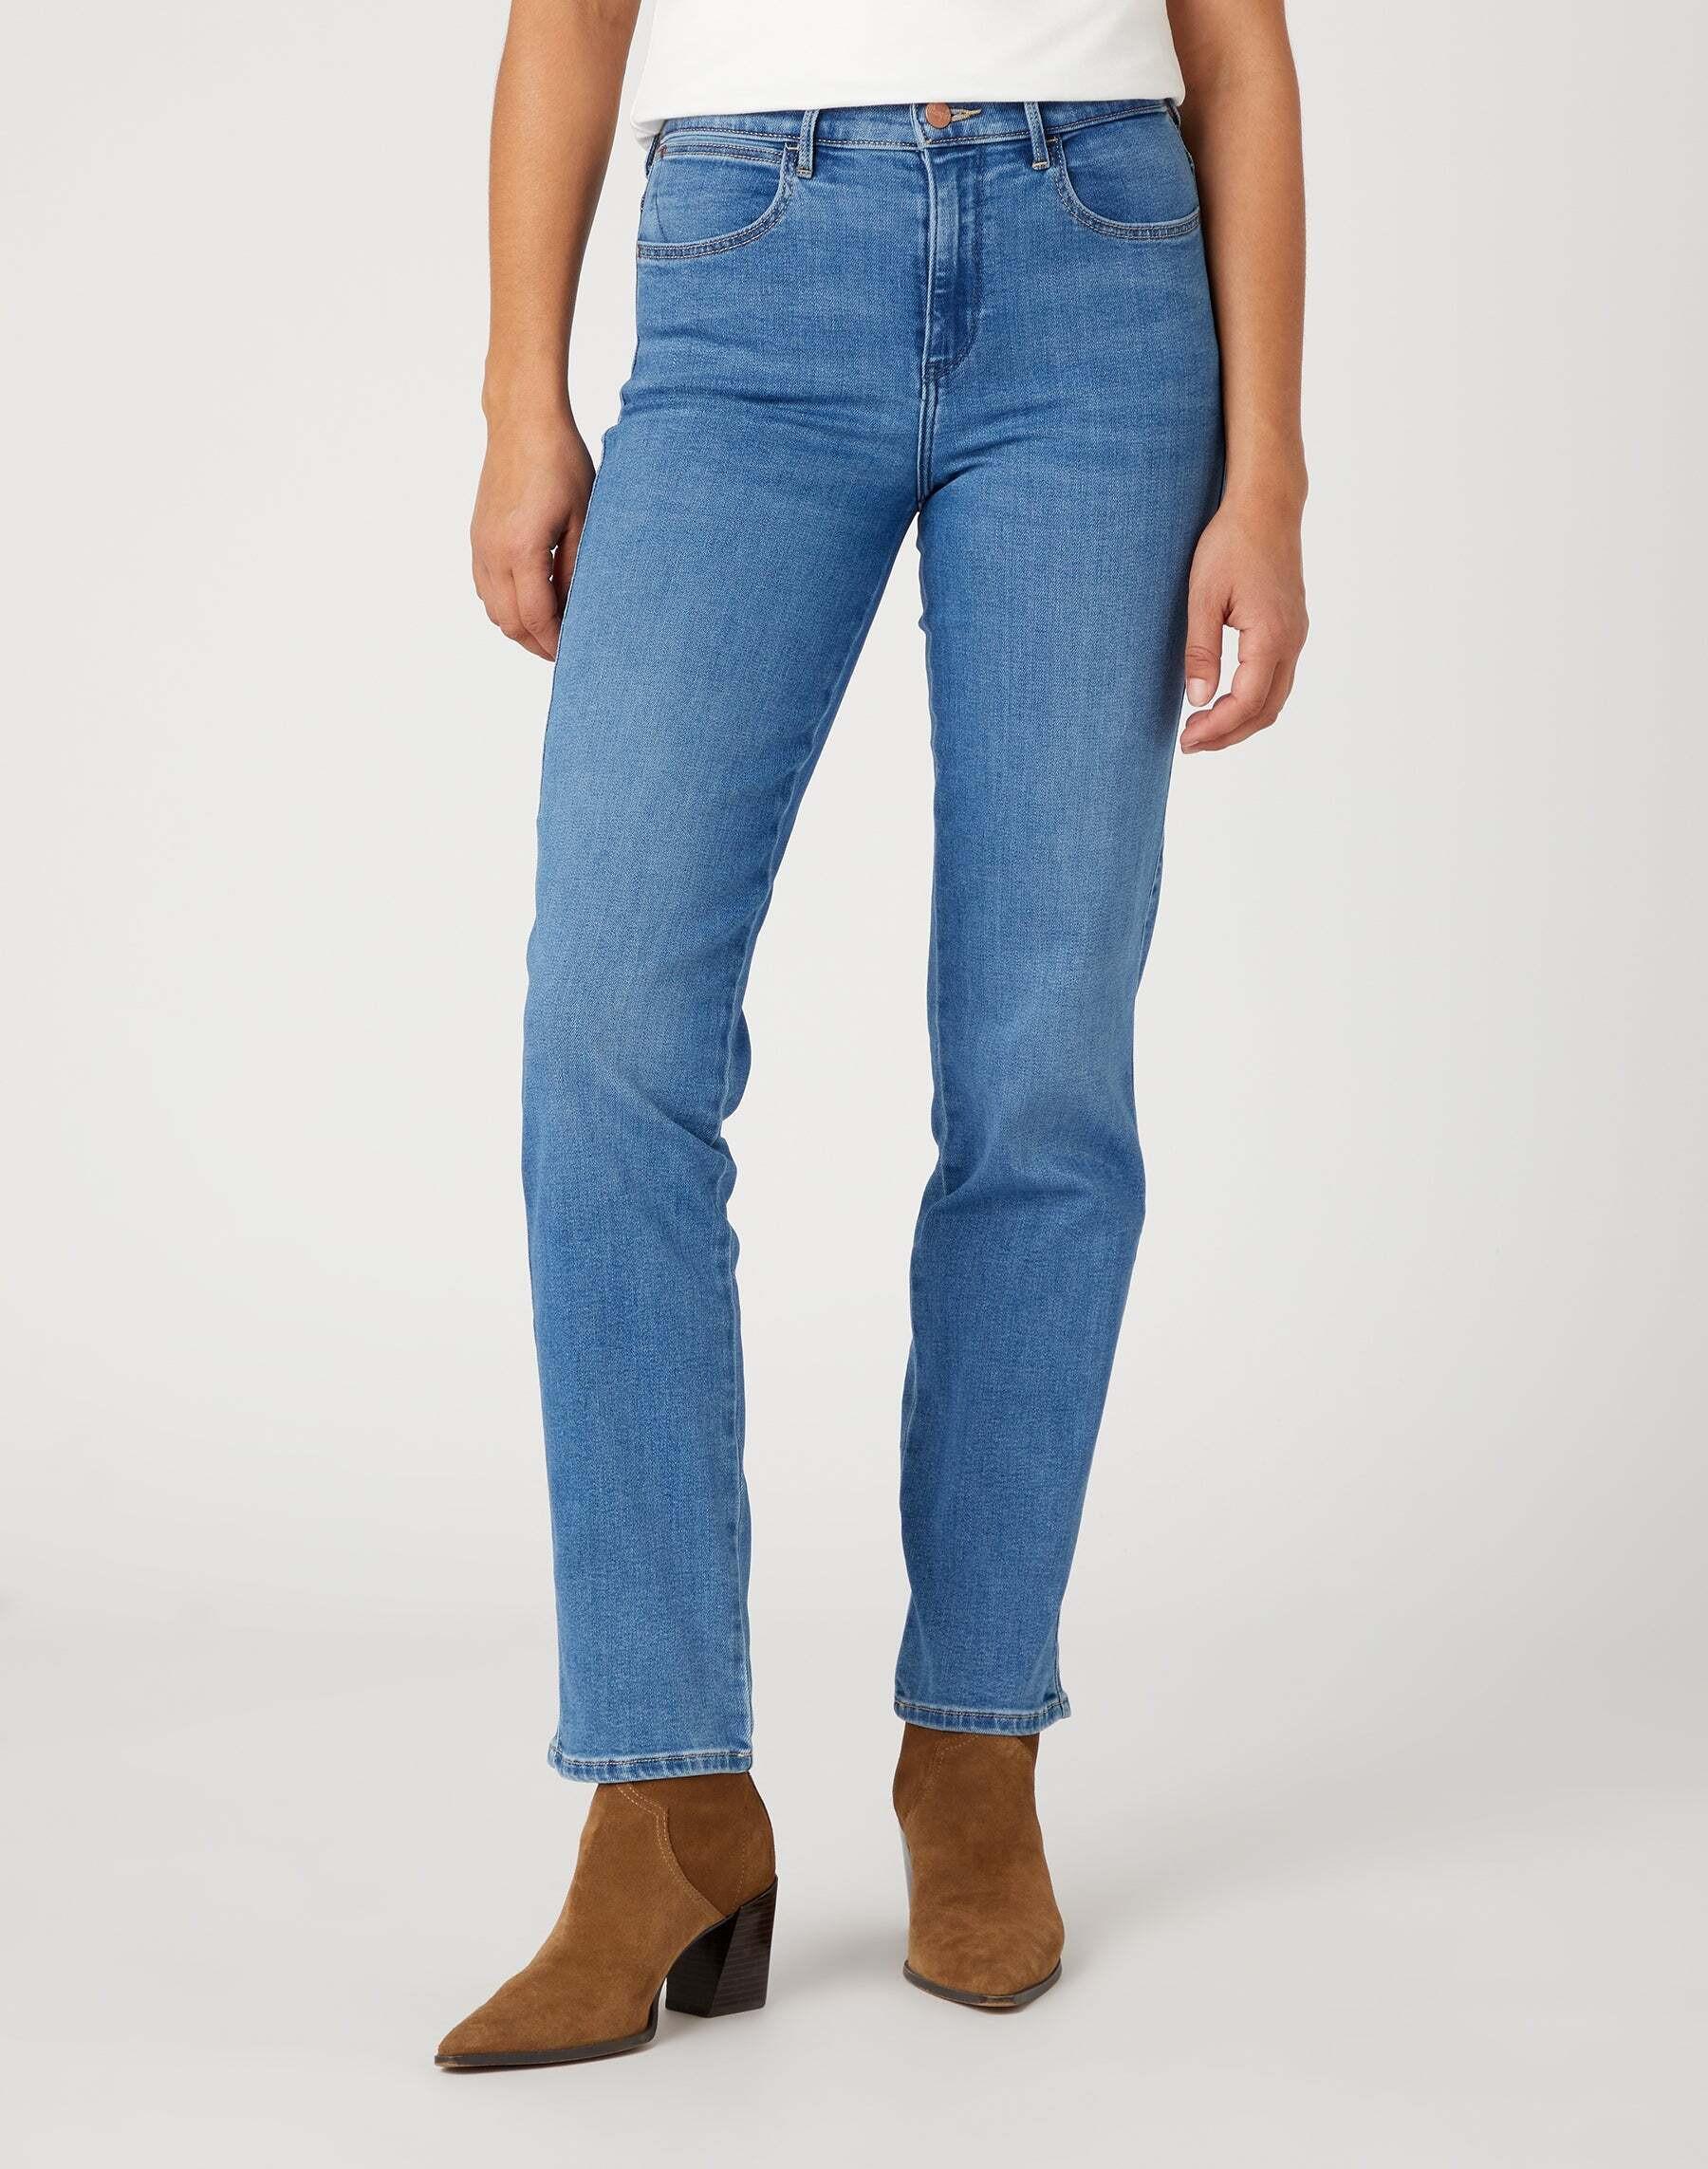 Jeans Straight Damen Hellblau L30/W29 von Wrangler